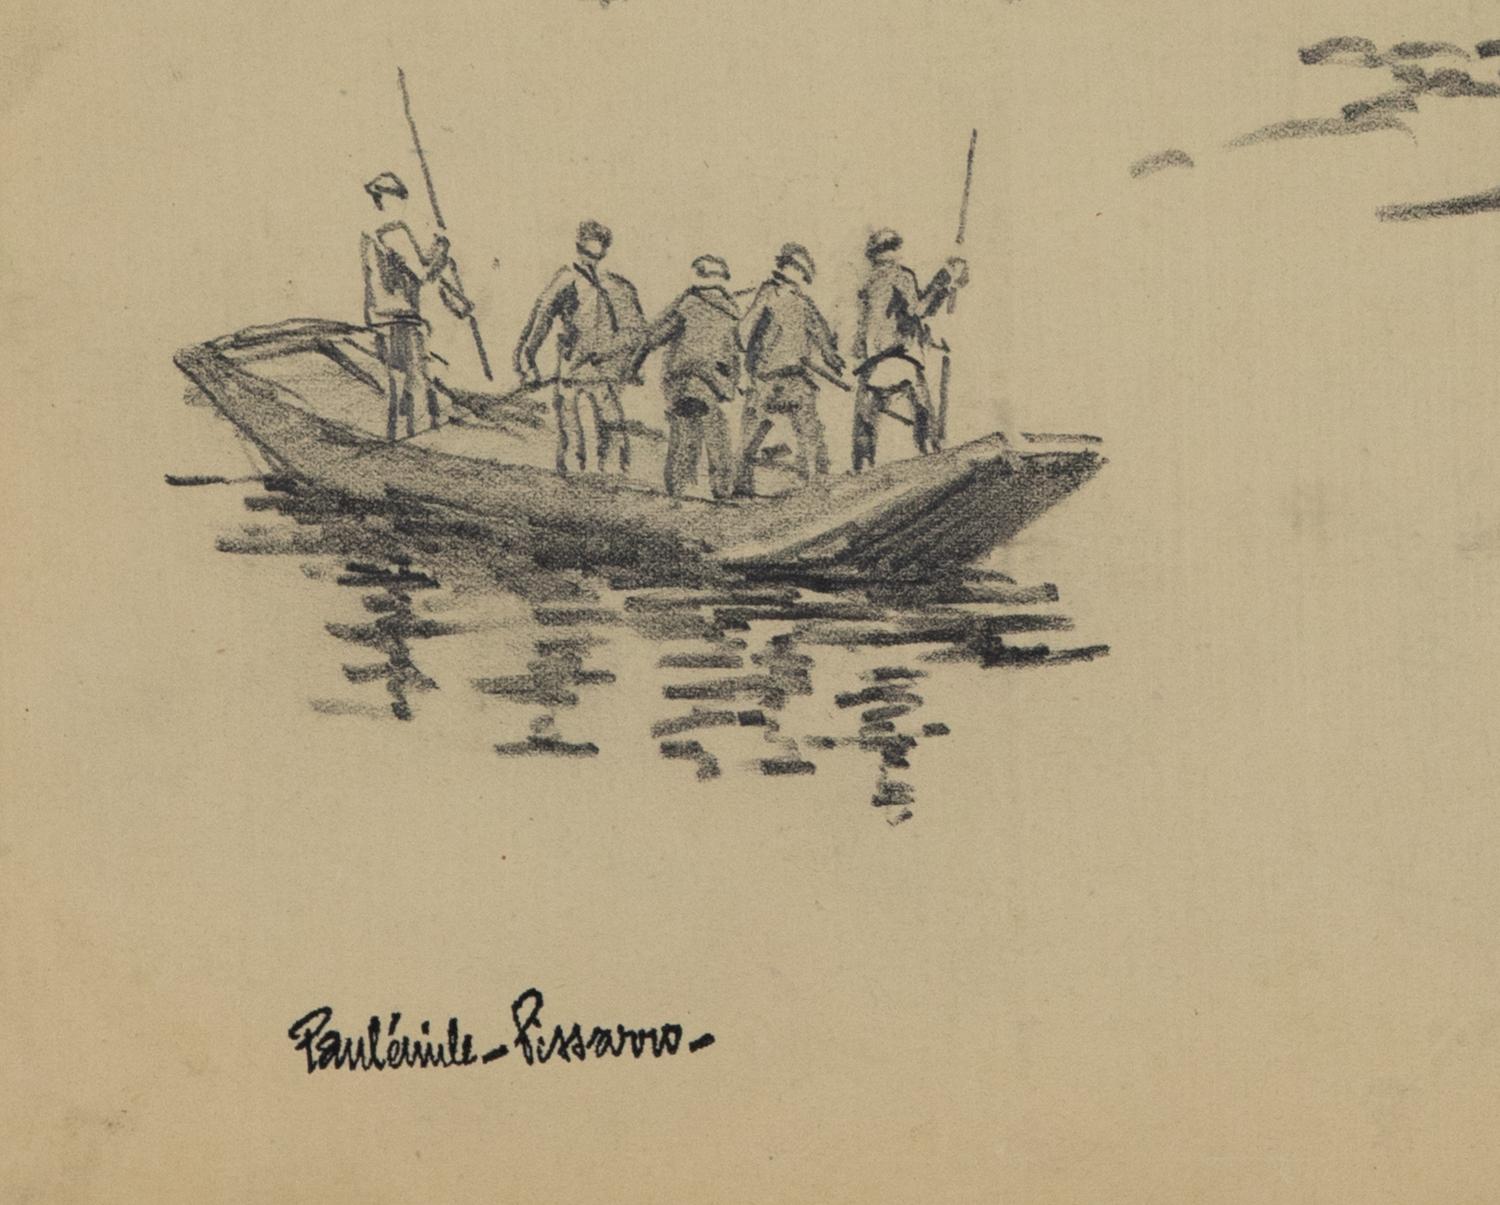 Pêcheurs von Paulémile Pissarro - Zeichnung von Fischern (Braun), Figurative Art, von Paul Emile Pissarro